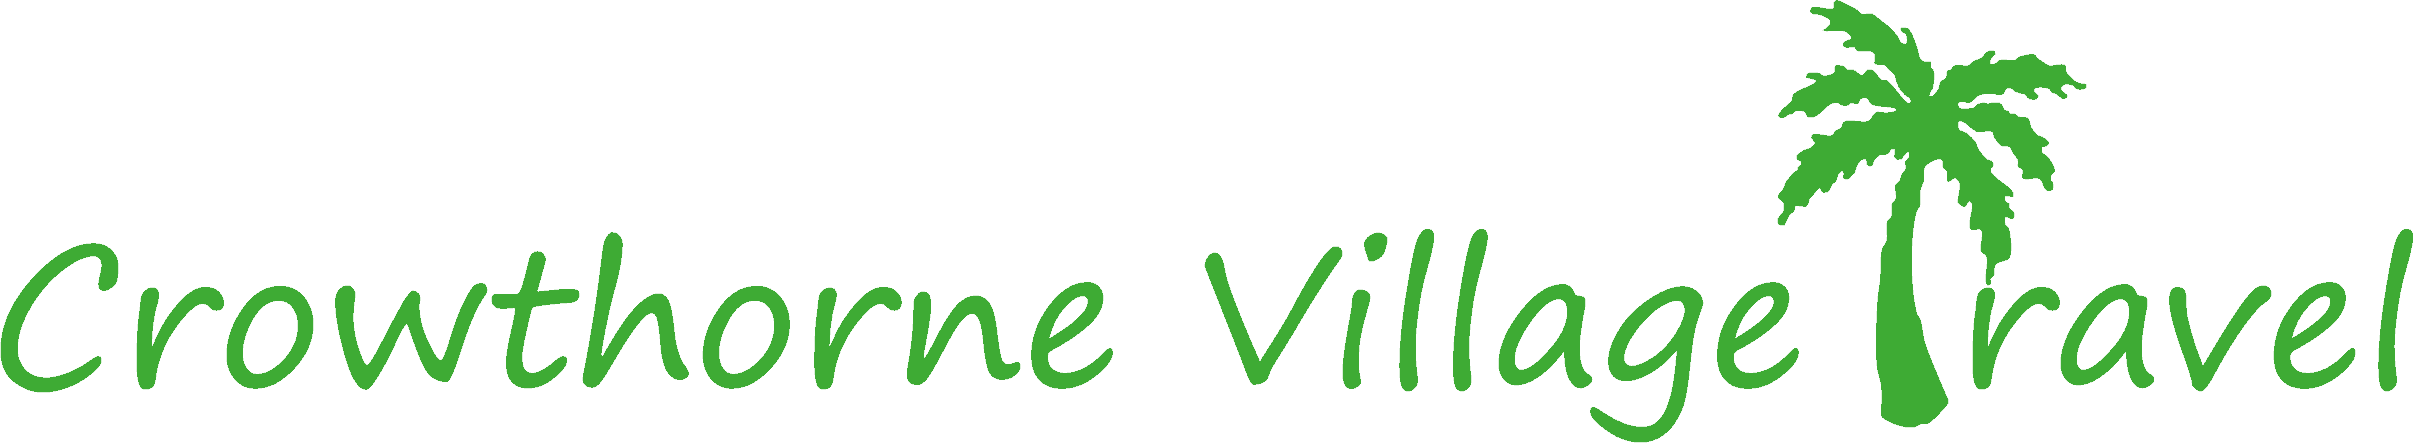 Crowthorne Village Travel Logo